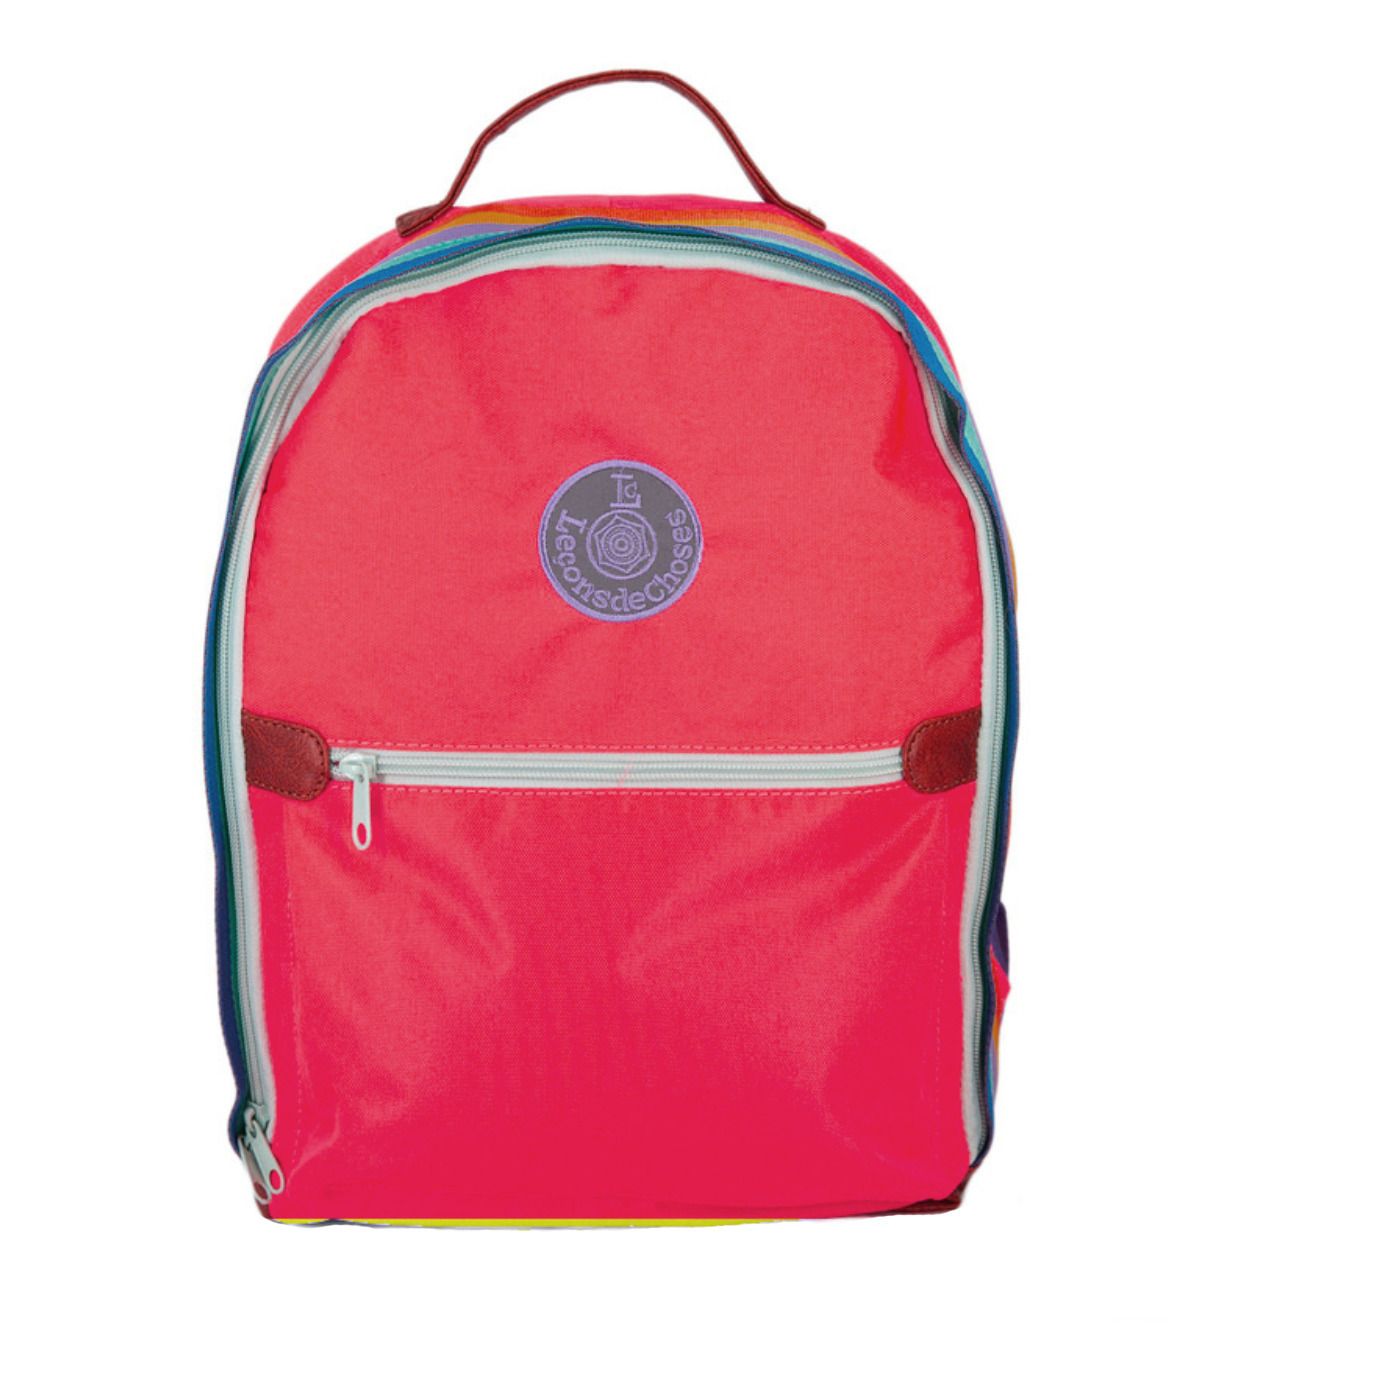 Leçons de choses - Retro School Bag - Red